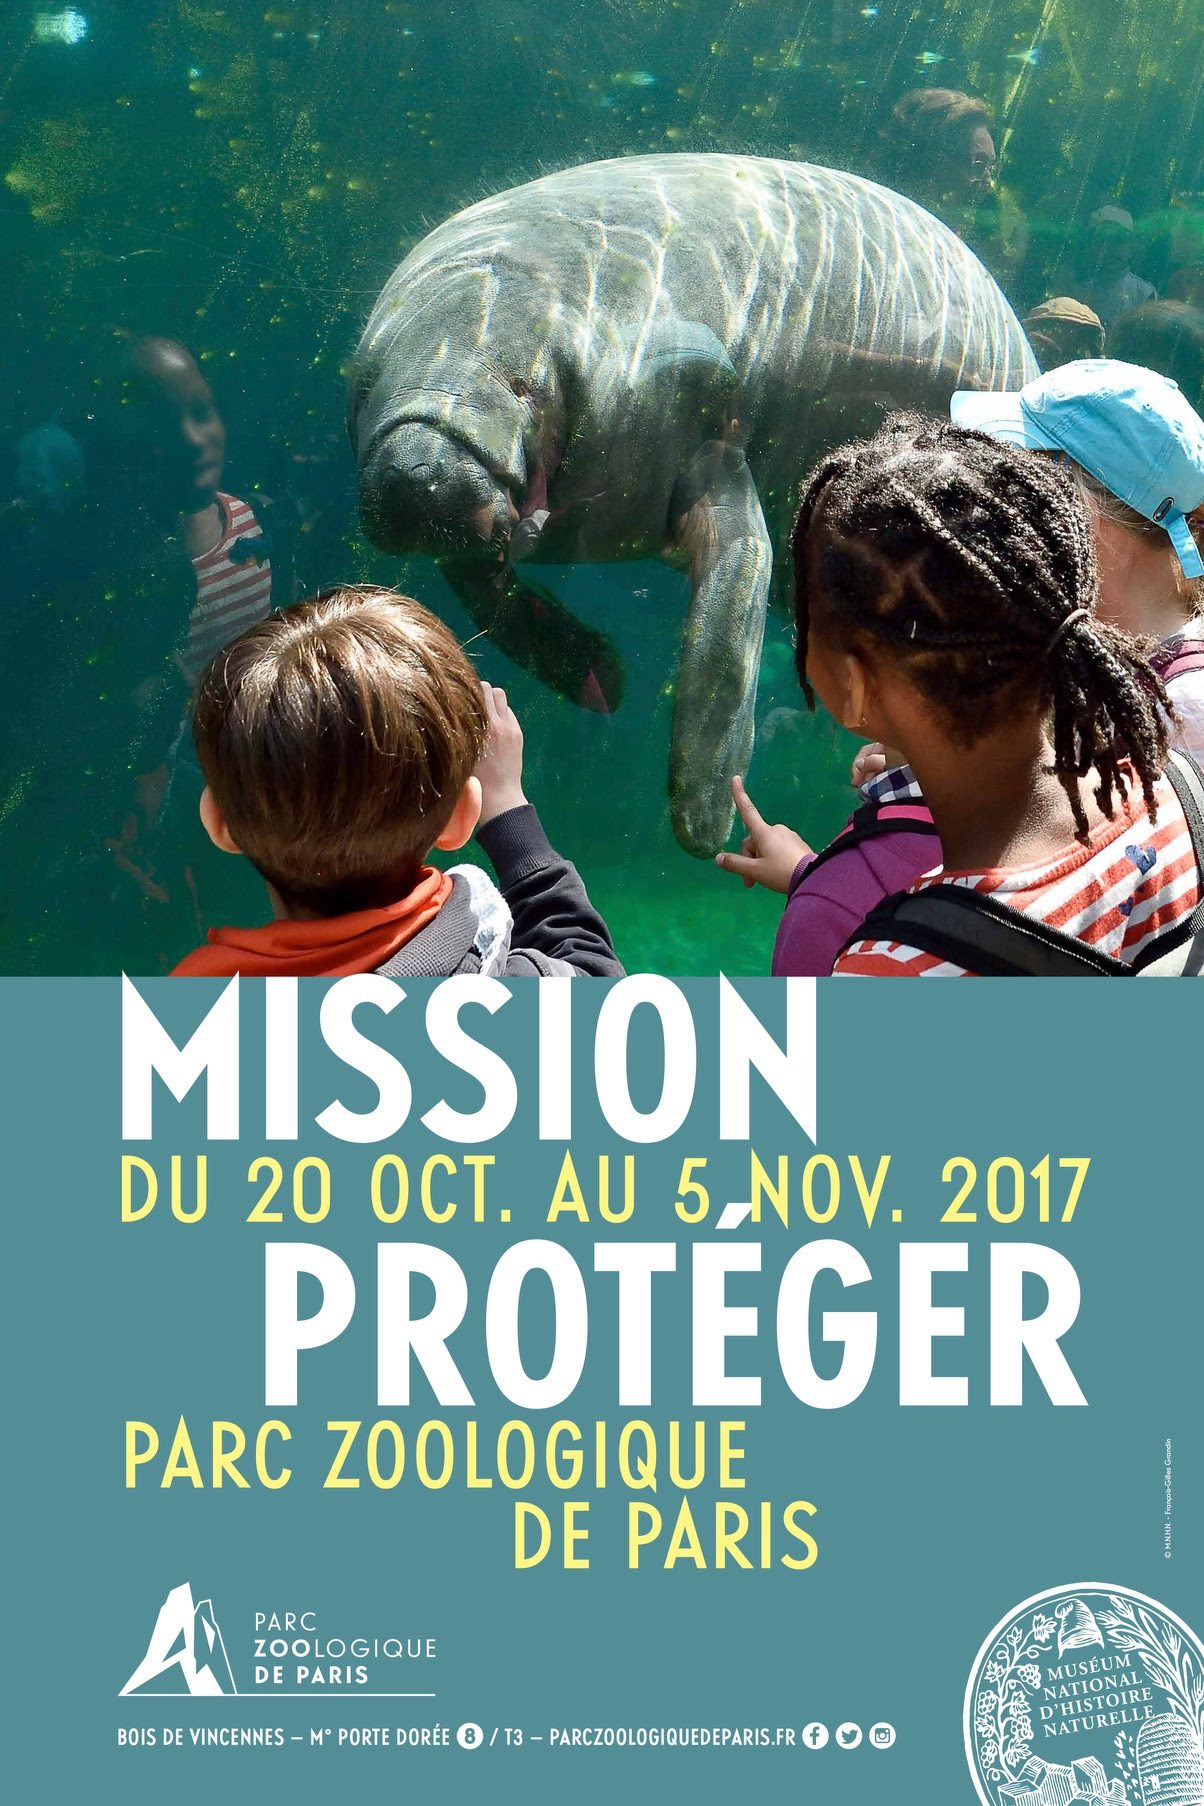 PARC ZOOLOGIQUE DE PARIS : MISSION PROTÉGER